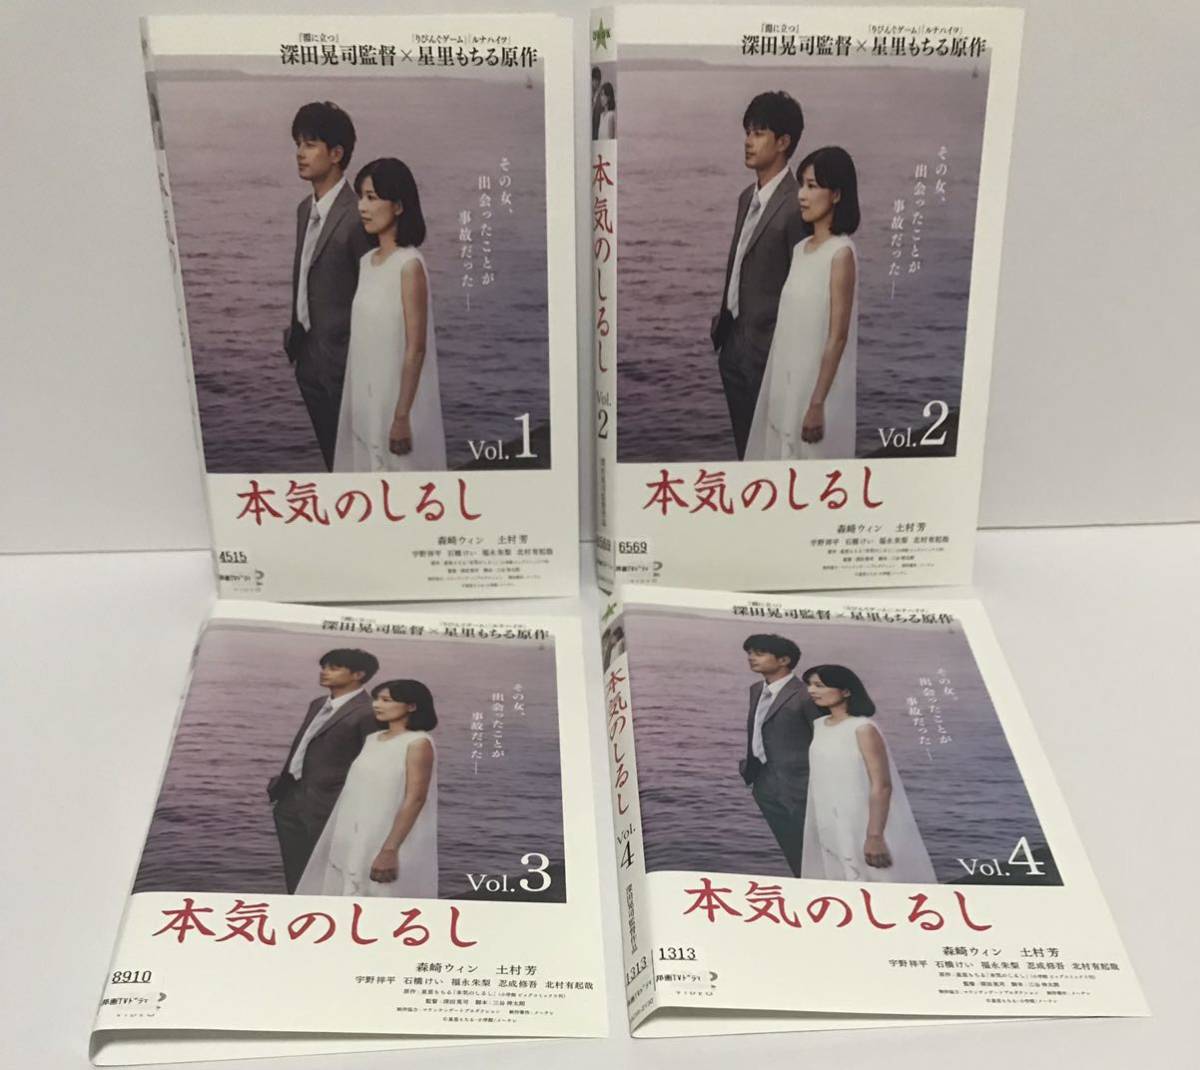 本気のしるし 全4巻 DVD レンタル落ち / 森崎ウィン 土村芳